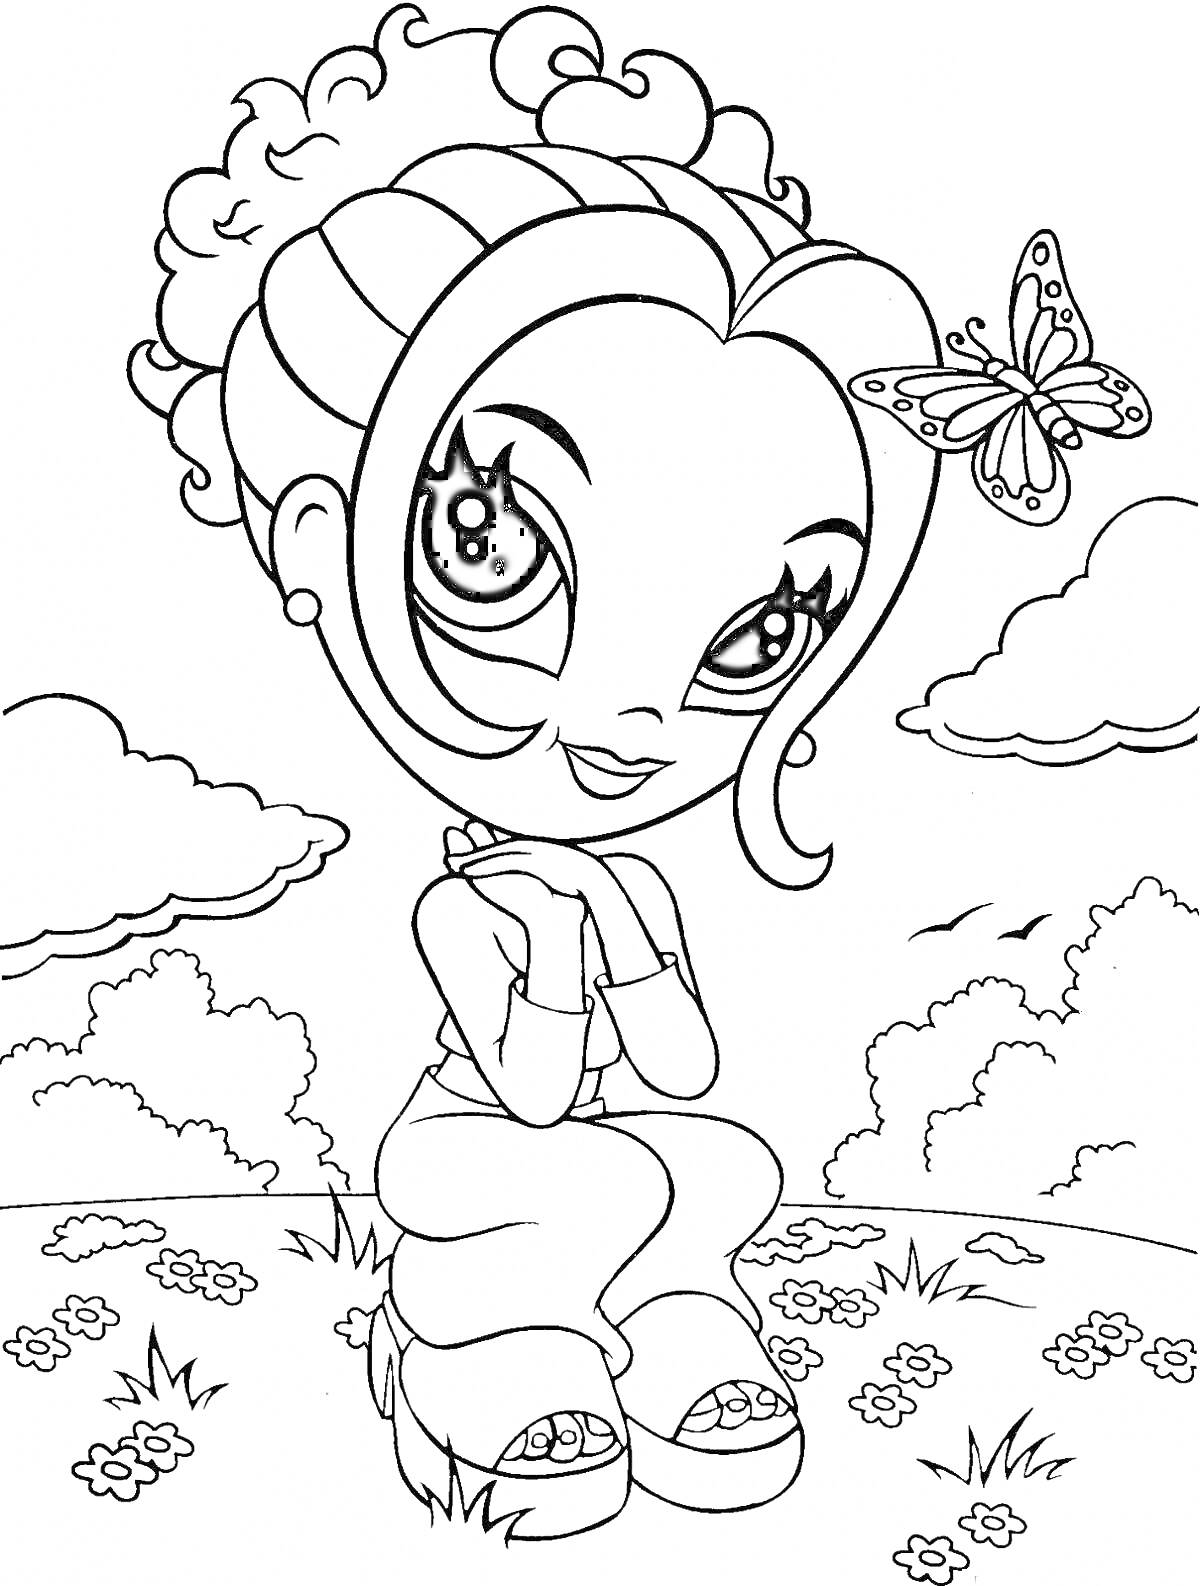 Раскраска Девочка с закрученными волосами и бабочкой на голове на фоне природы